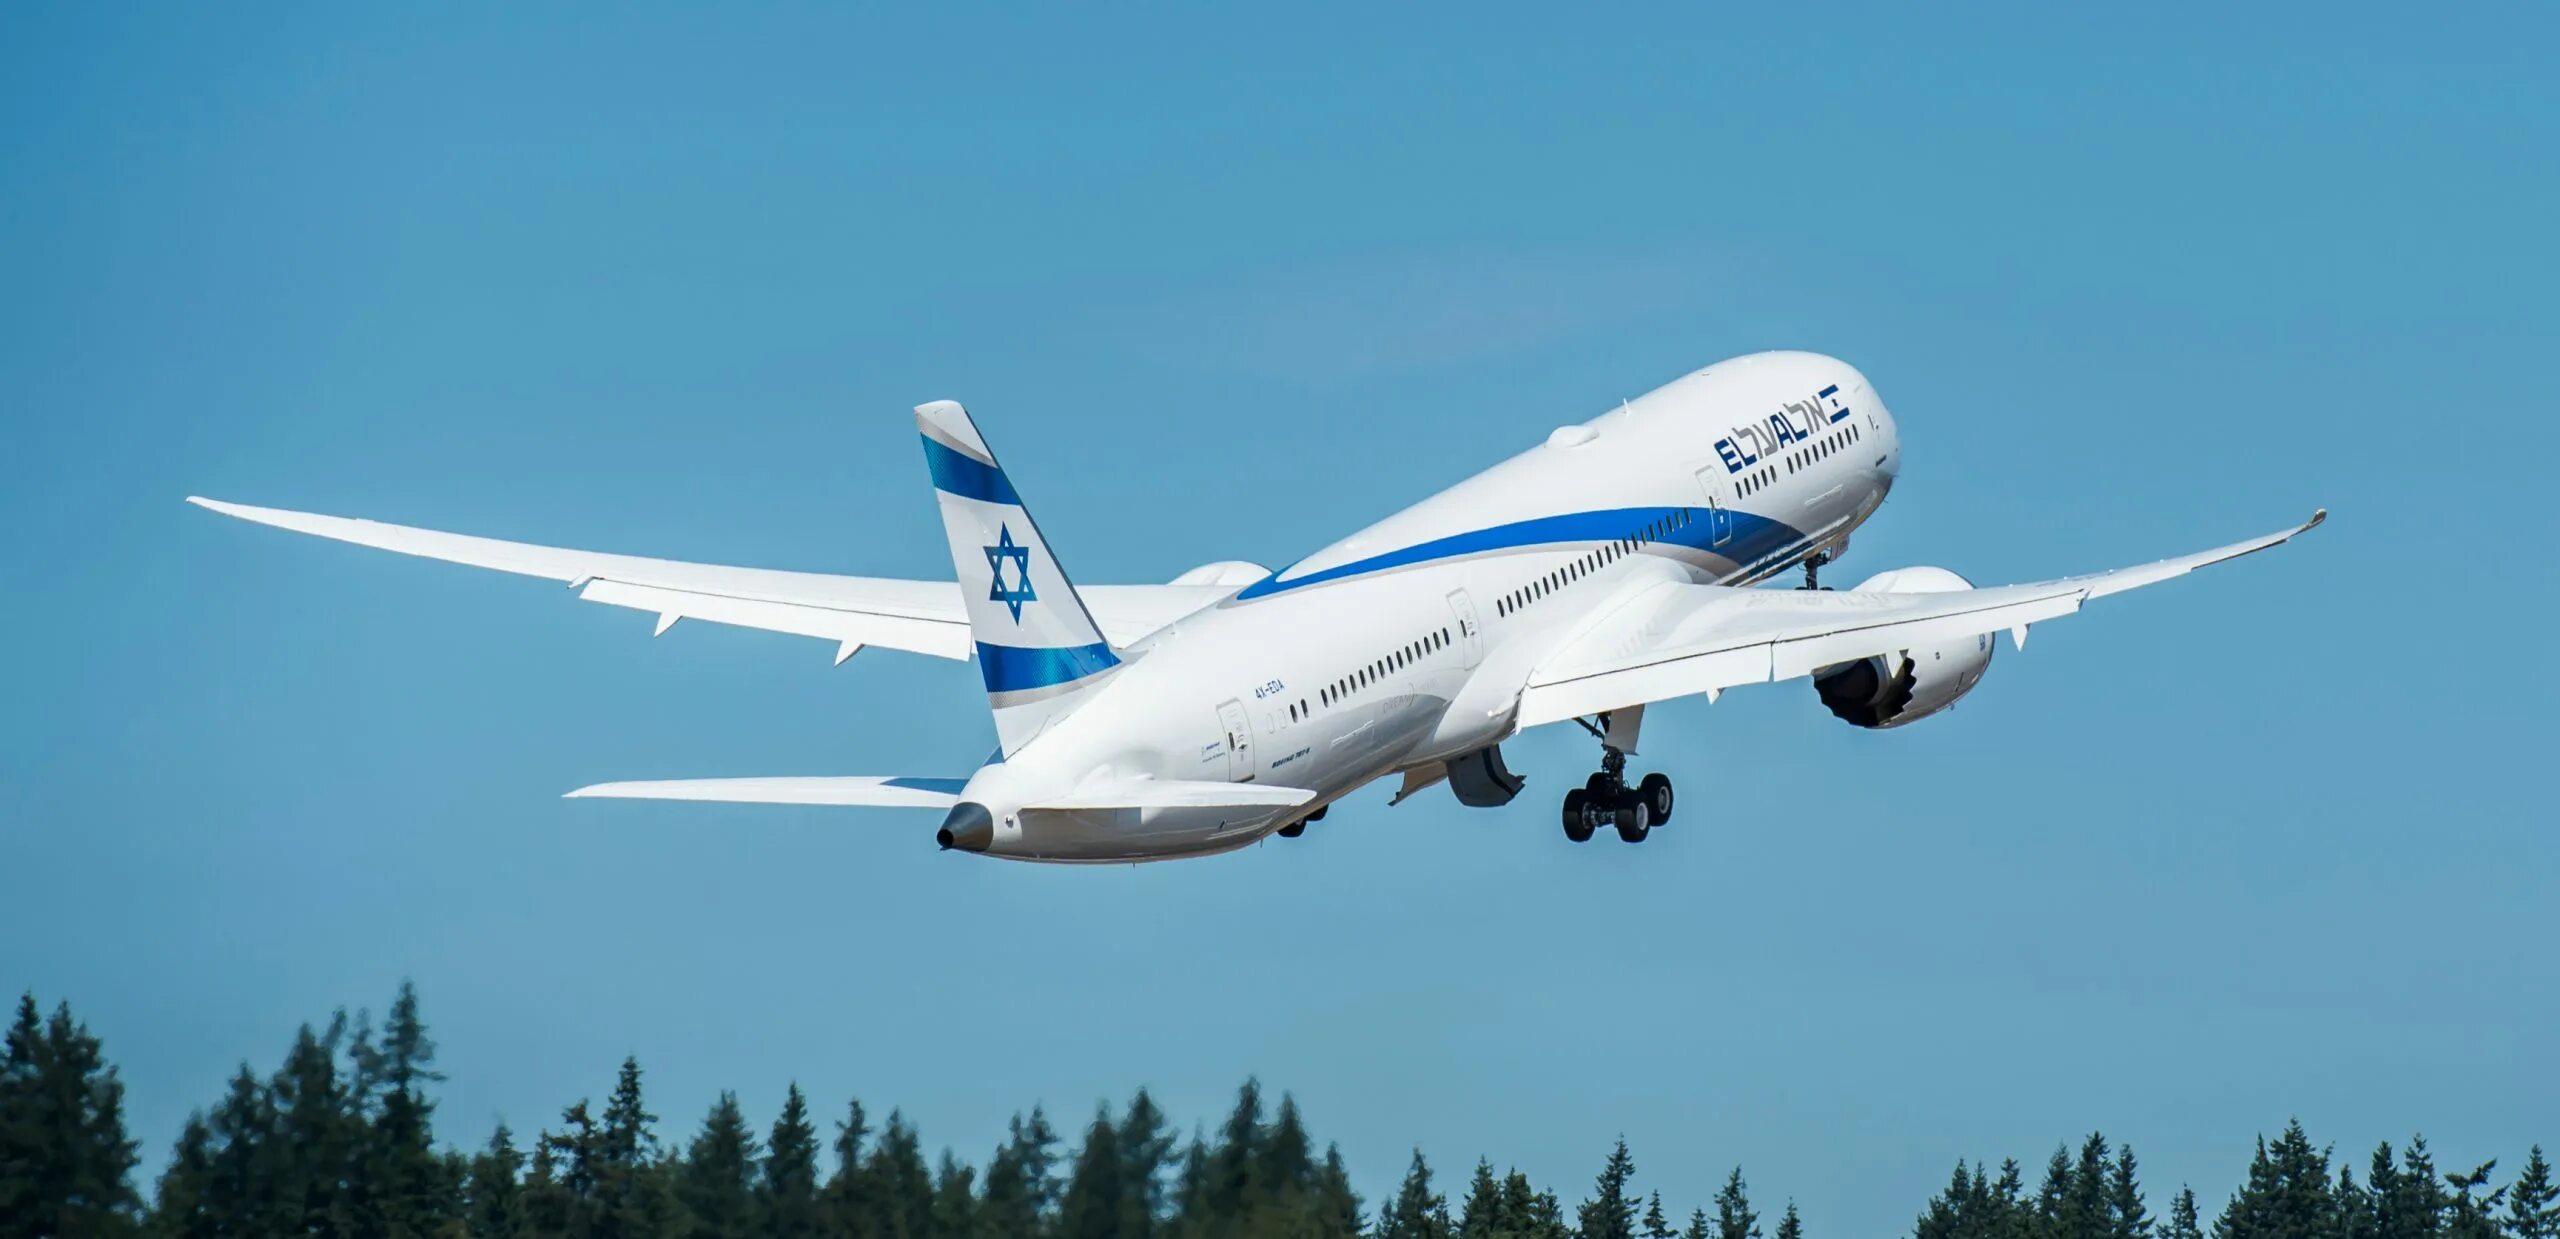 El al israel. Боинг 787 авиакомпании Israel. Израильская авиакомпания Эль Аль. Израильские авиалинии Боинг 747. Боинг 787-9 Эль Аль.